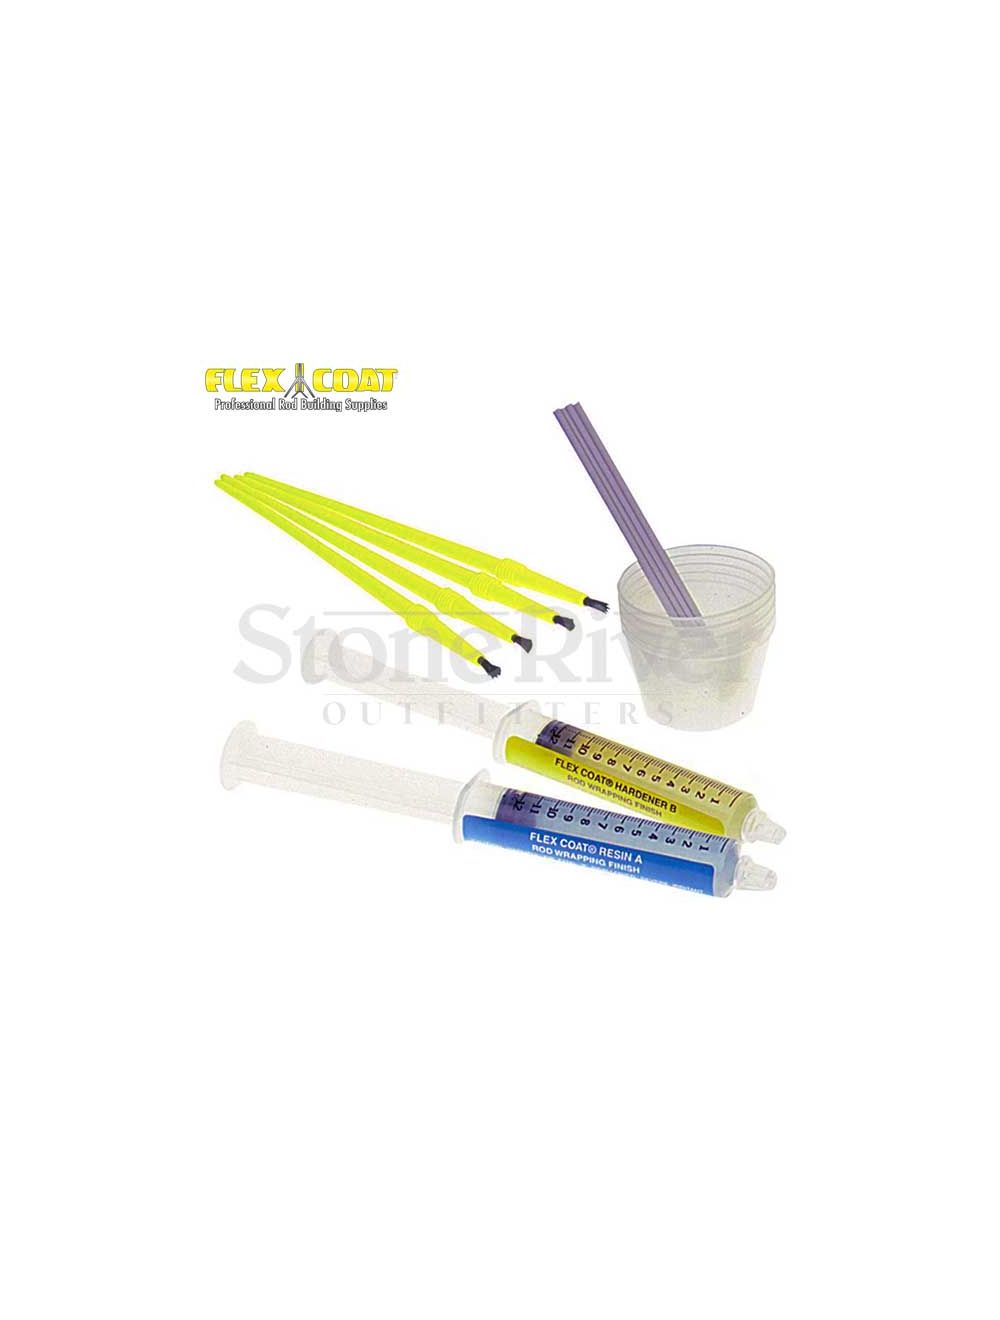 Flex Coat High-Build Rod Epoxy Loaded Syringe Kit